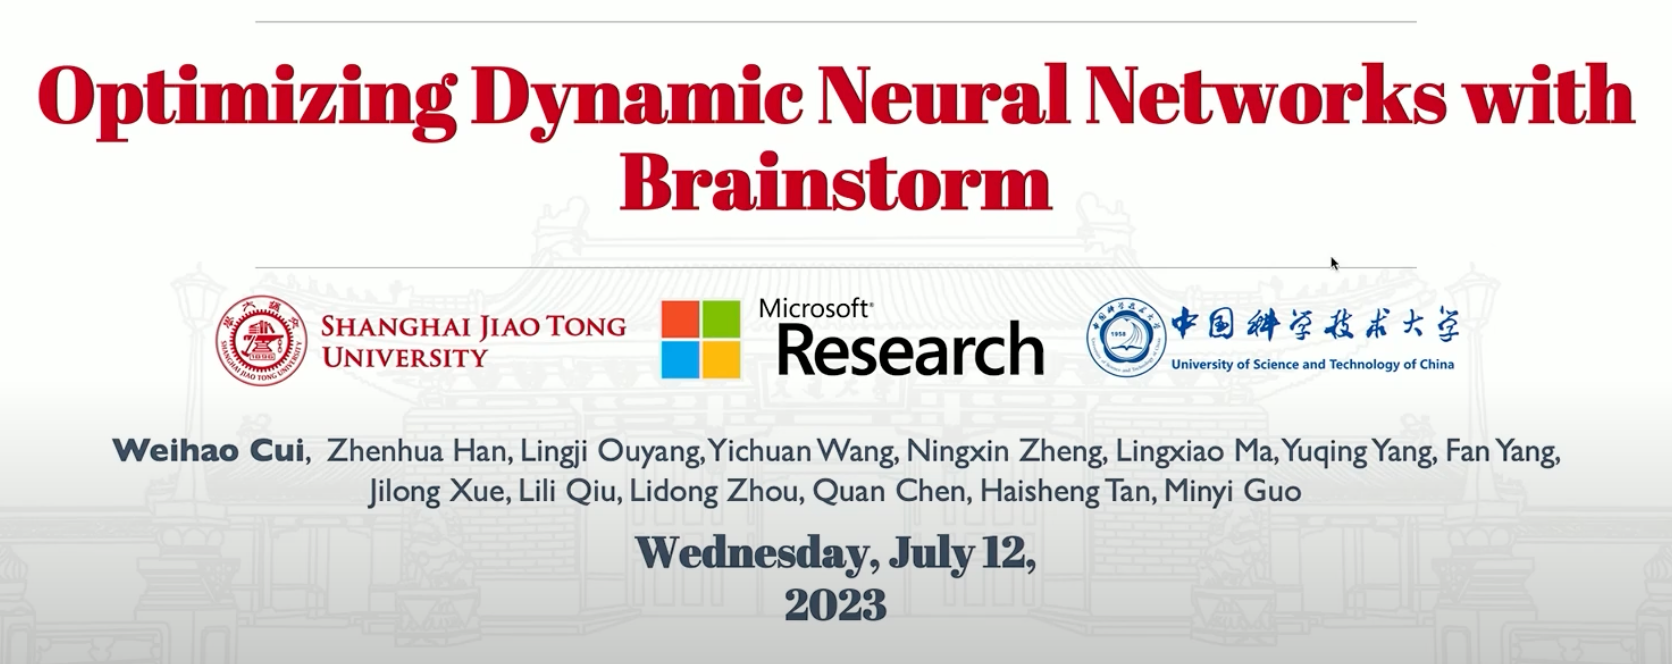 论文阅读: Optimizing Dynamic Neural Networks with Brainstorm